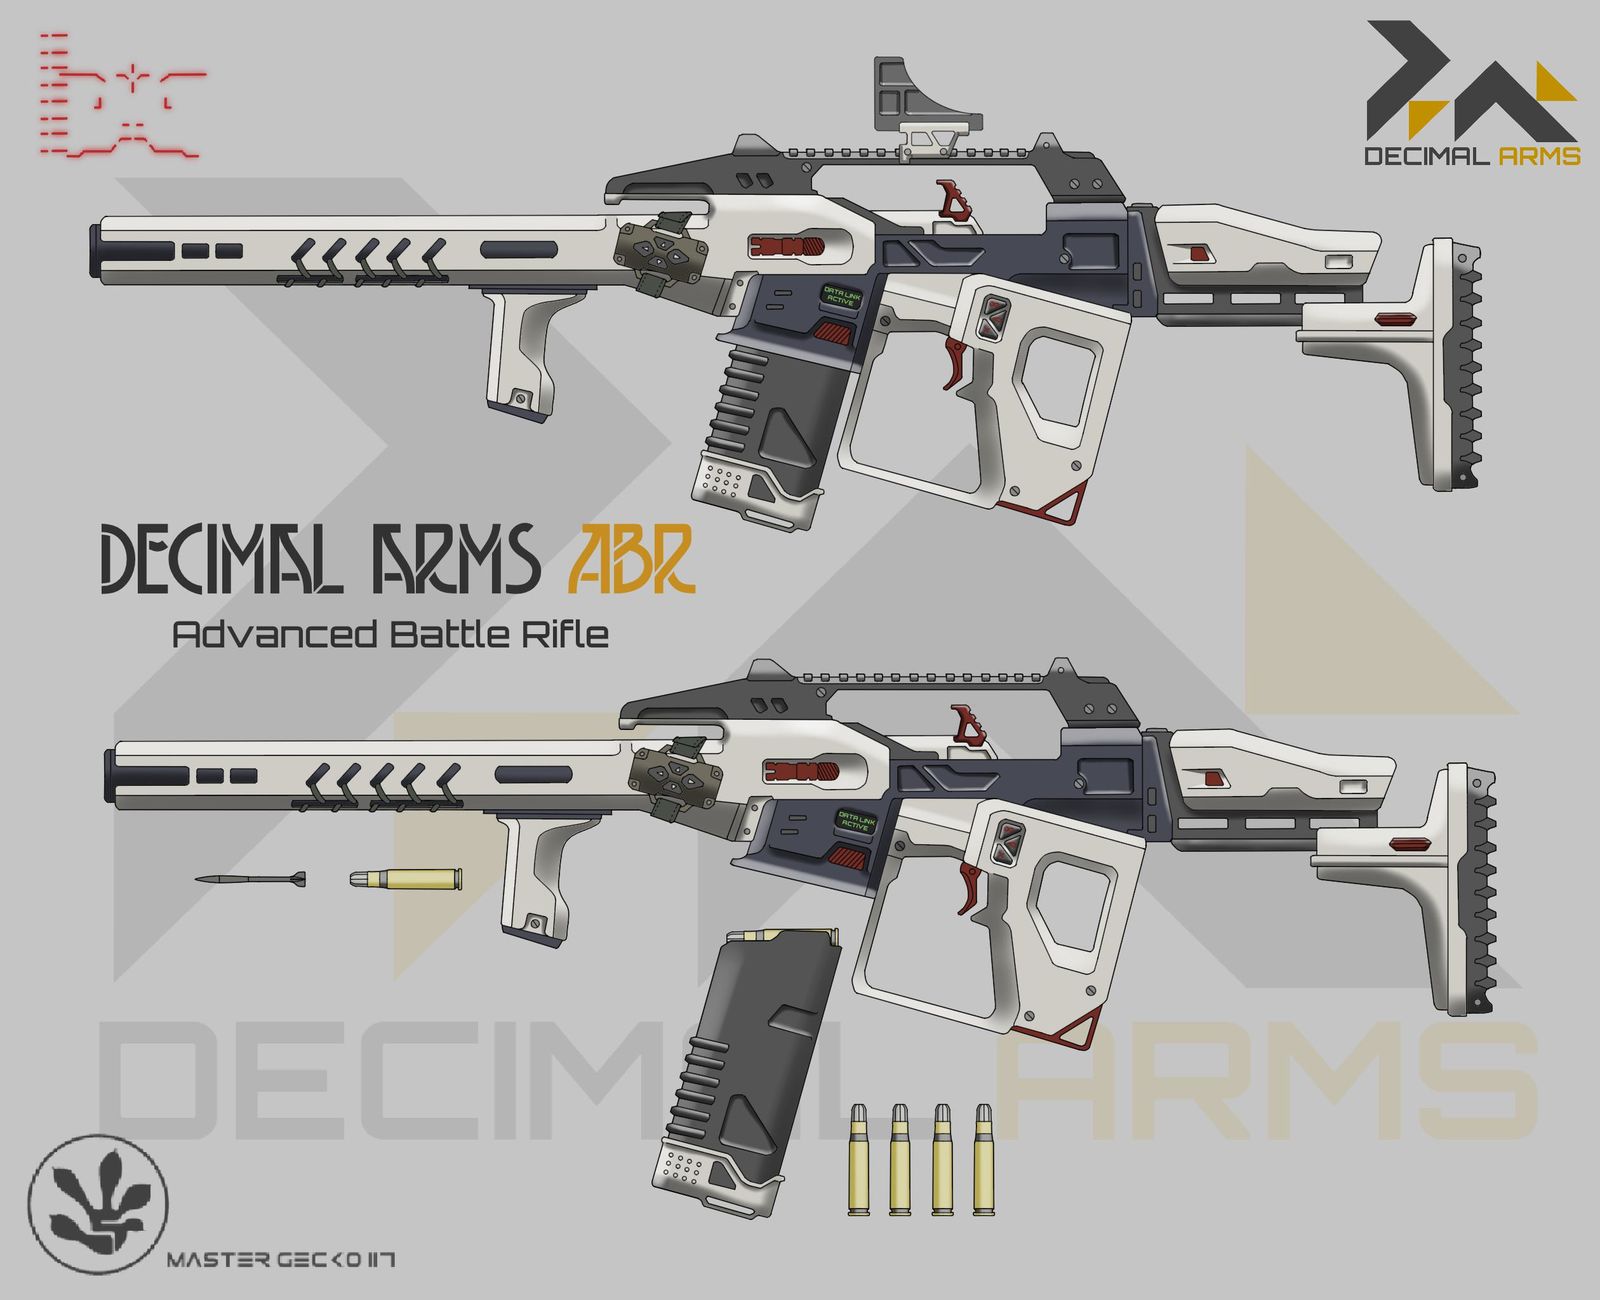 Decimal Arms ABR-Gen.2